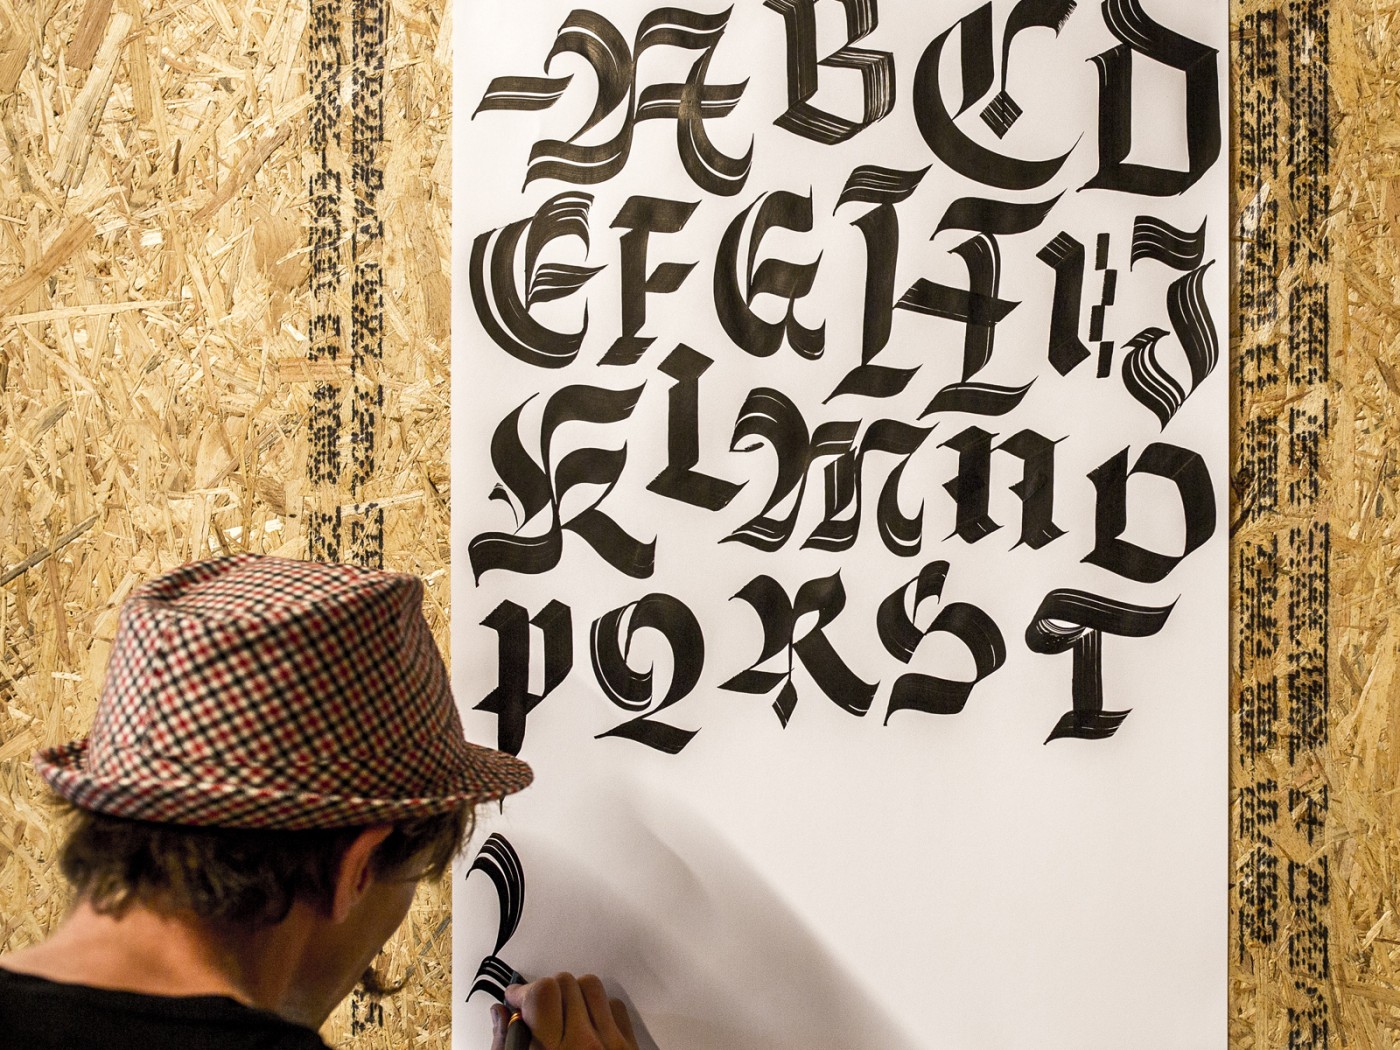 ręczne malowanie liter amsterdam 2016 letterheads